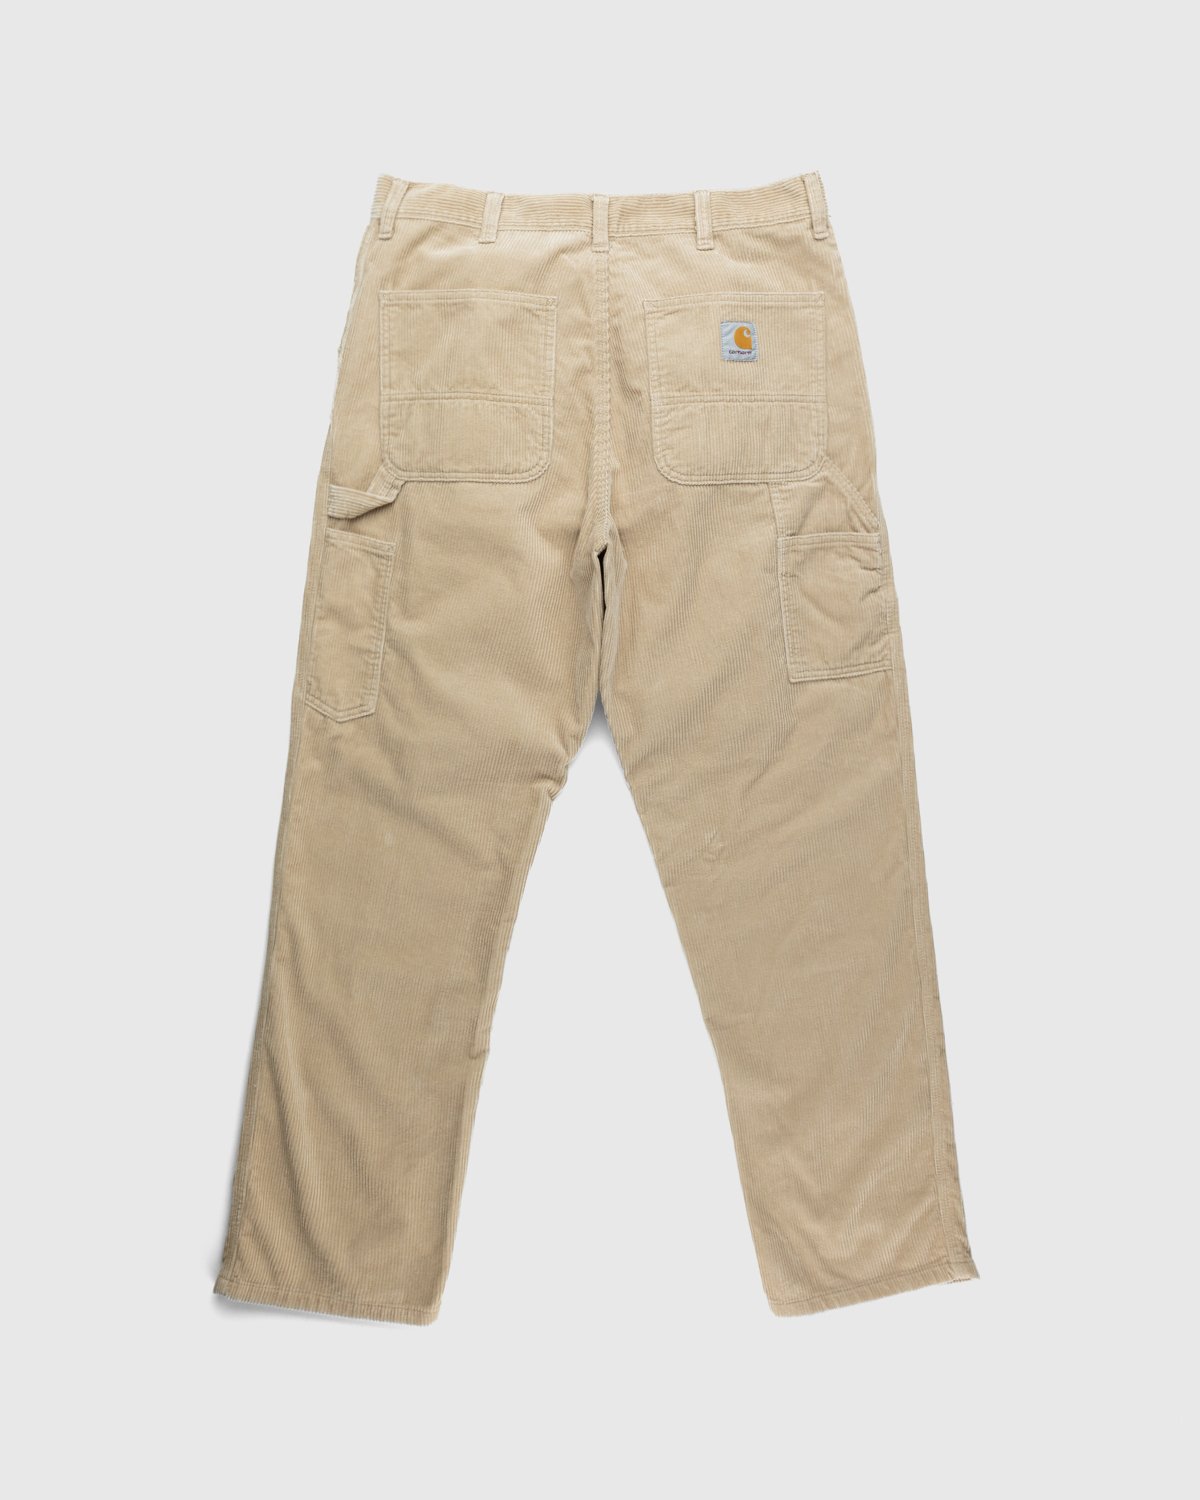 Carhartt WIP - Ruck Single Knee Pant Beige - Clothing - Brown - Image 2